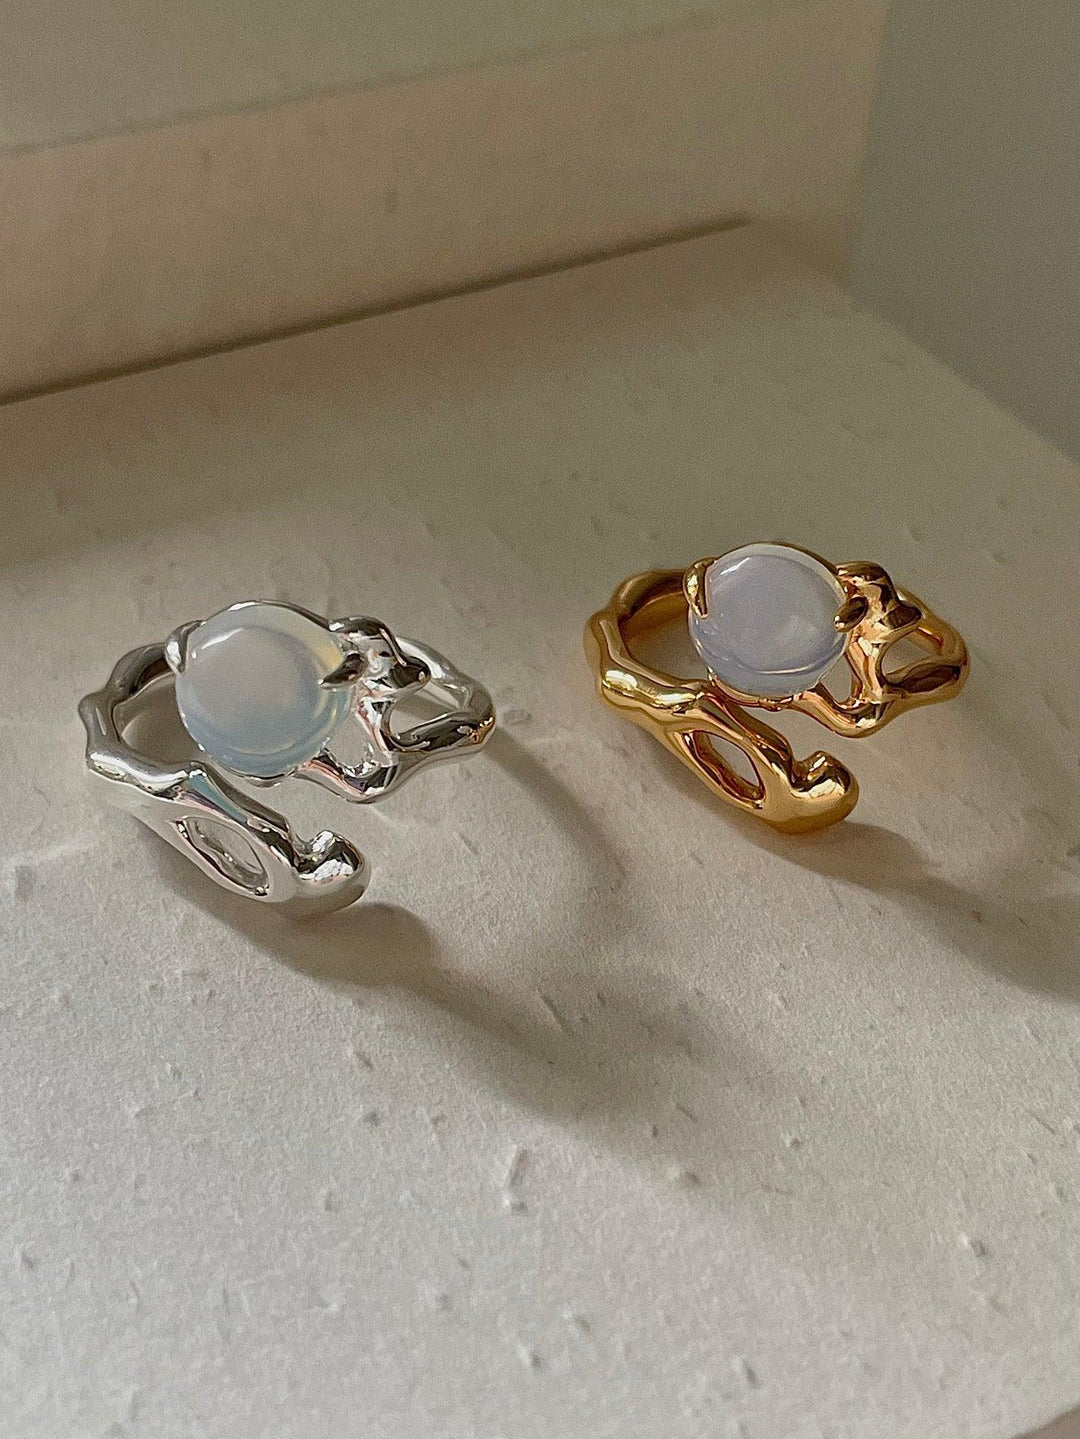 Design Opal Set Sterling Silver Ring Adjustable - Trendha